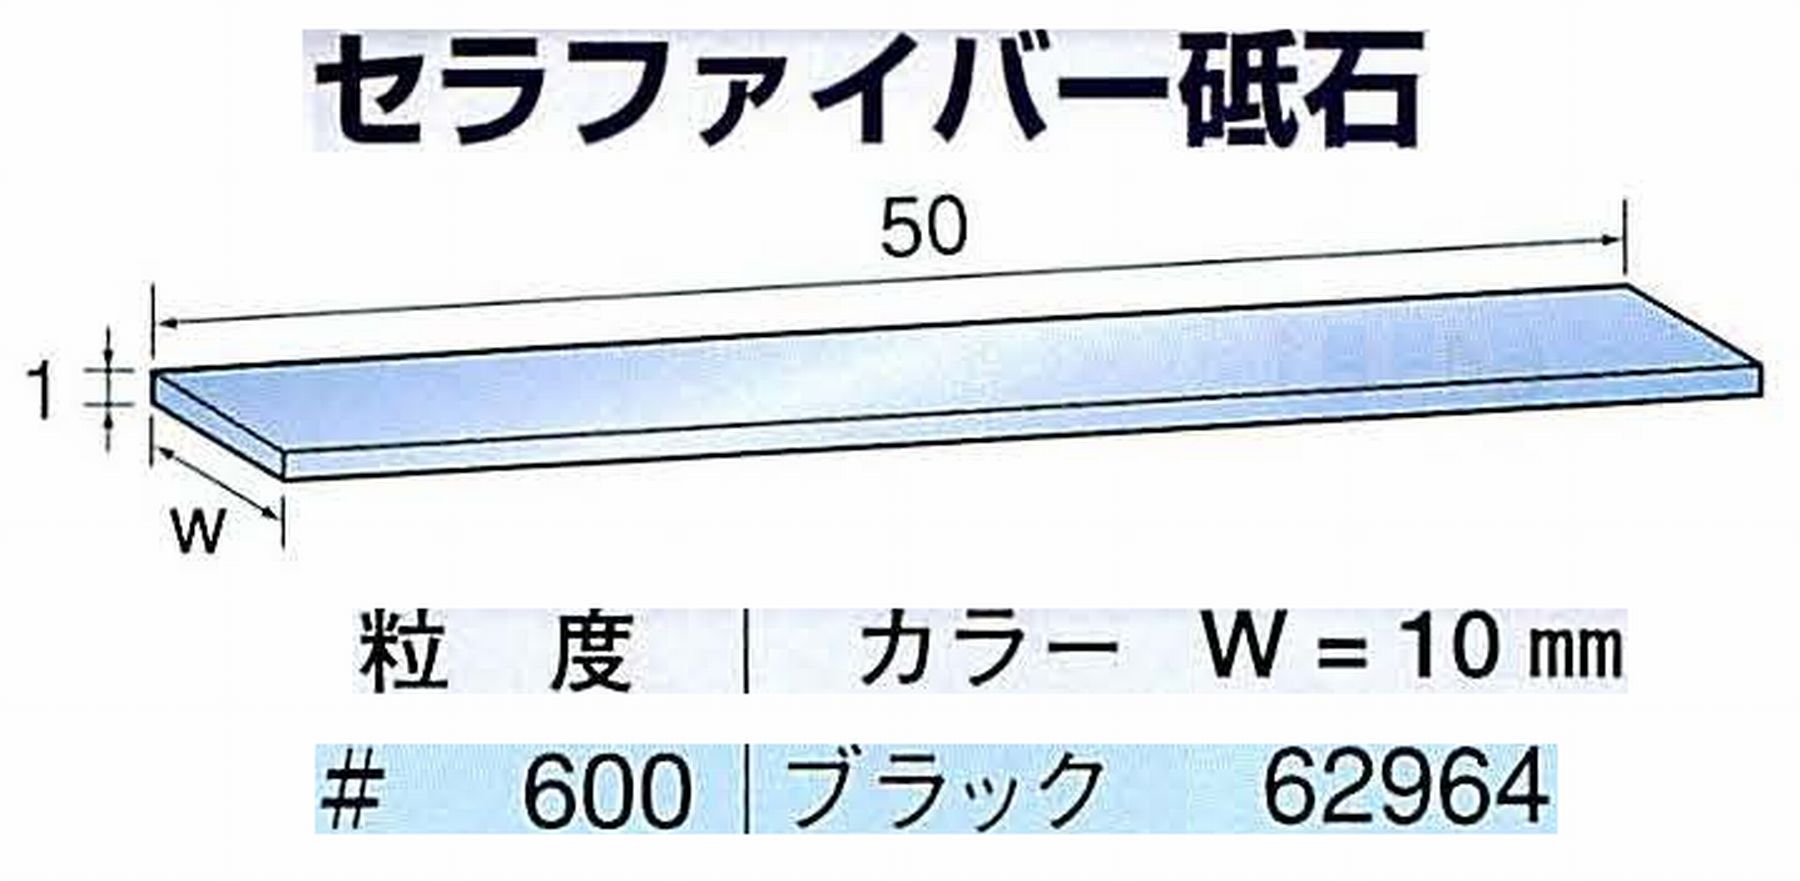 ナカニシ/NAKANISHI ペンシルタイプ 電動・エアーヤスリ(左右動) スイングラスター専用工具 セラファイバー砥石 62964